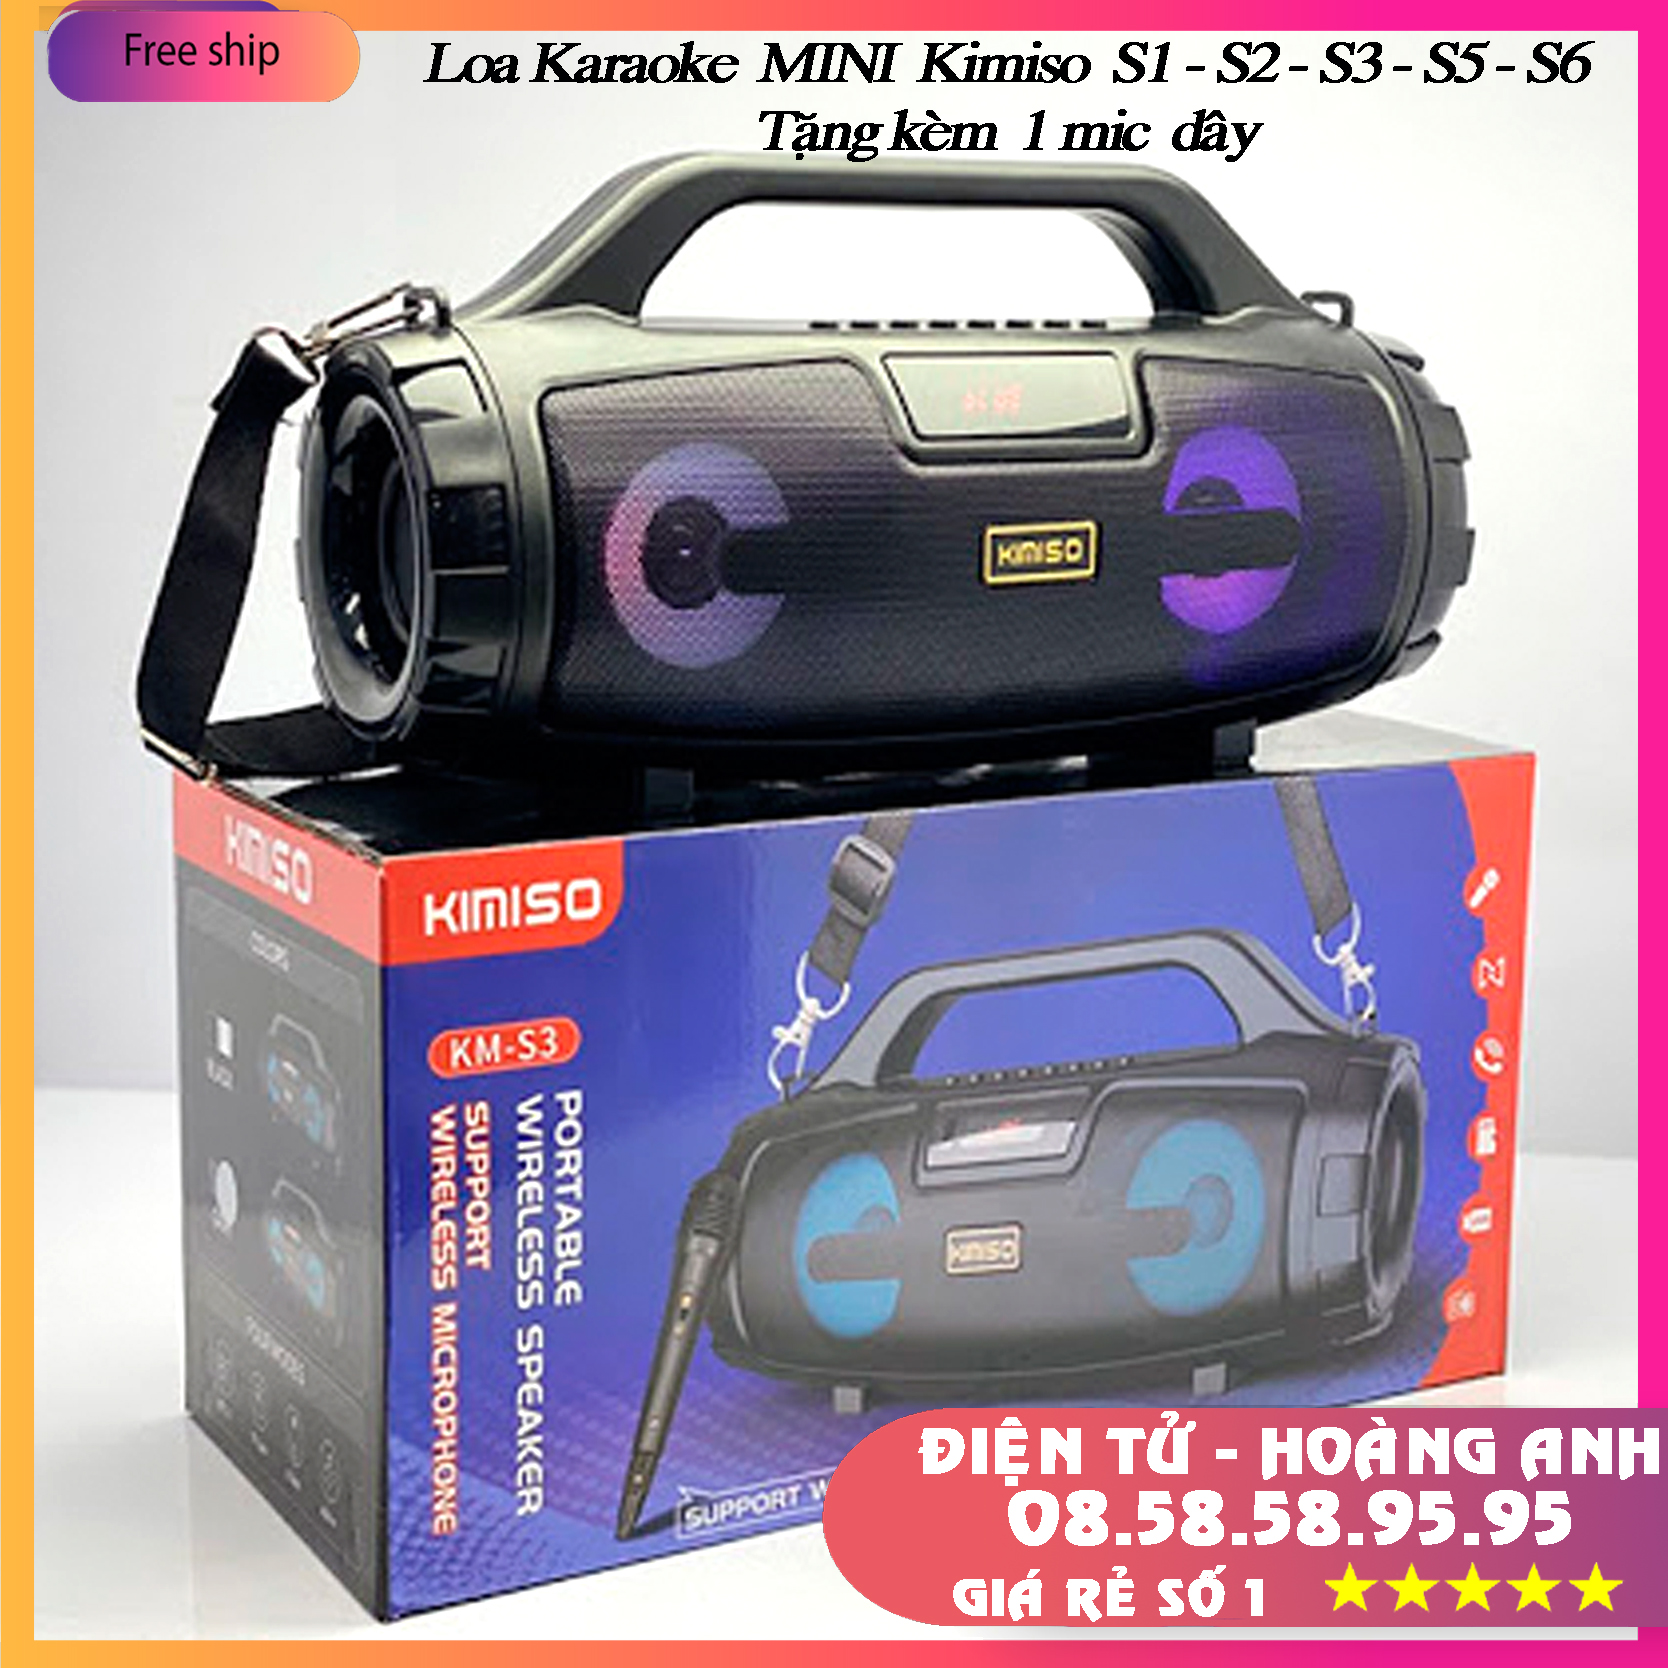 Loa Bluetooth Karaoke KIMISO KM-S3 -(S1 - S2 - S5 - S6) (tặng míc Có dây)